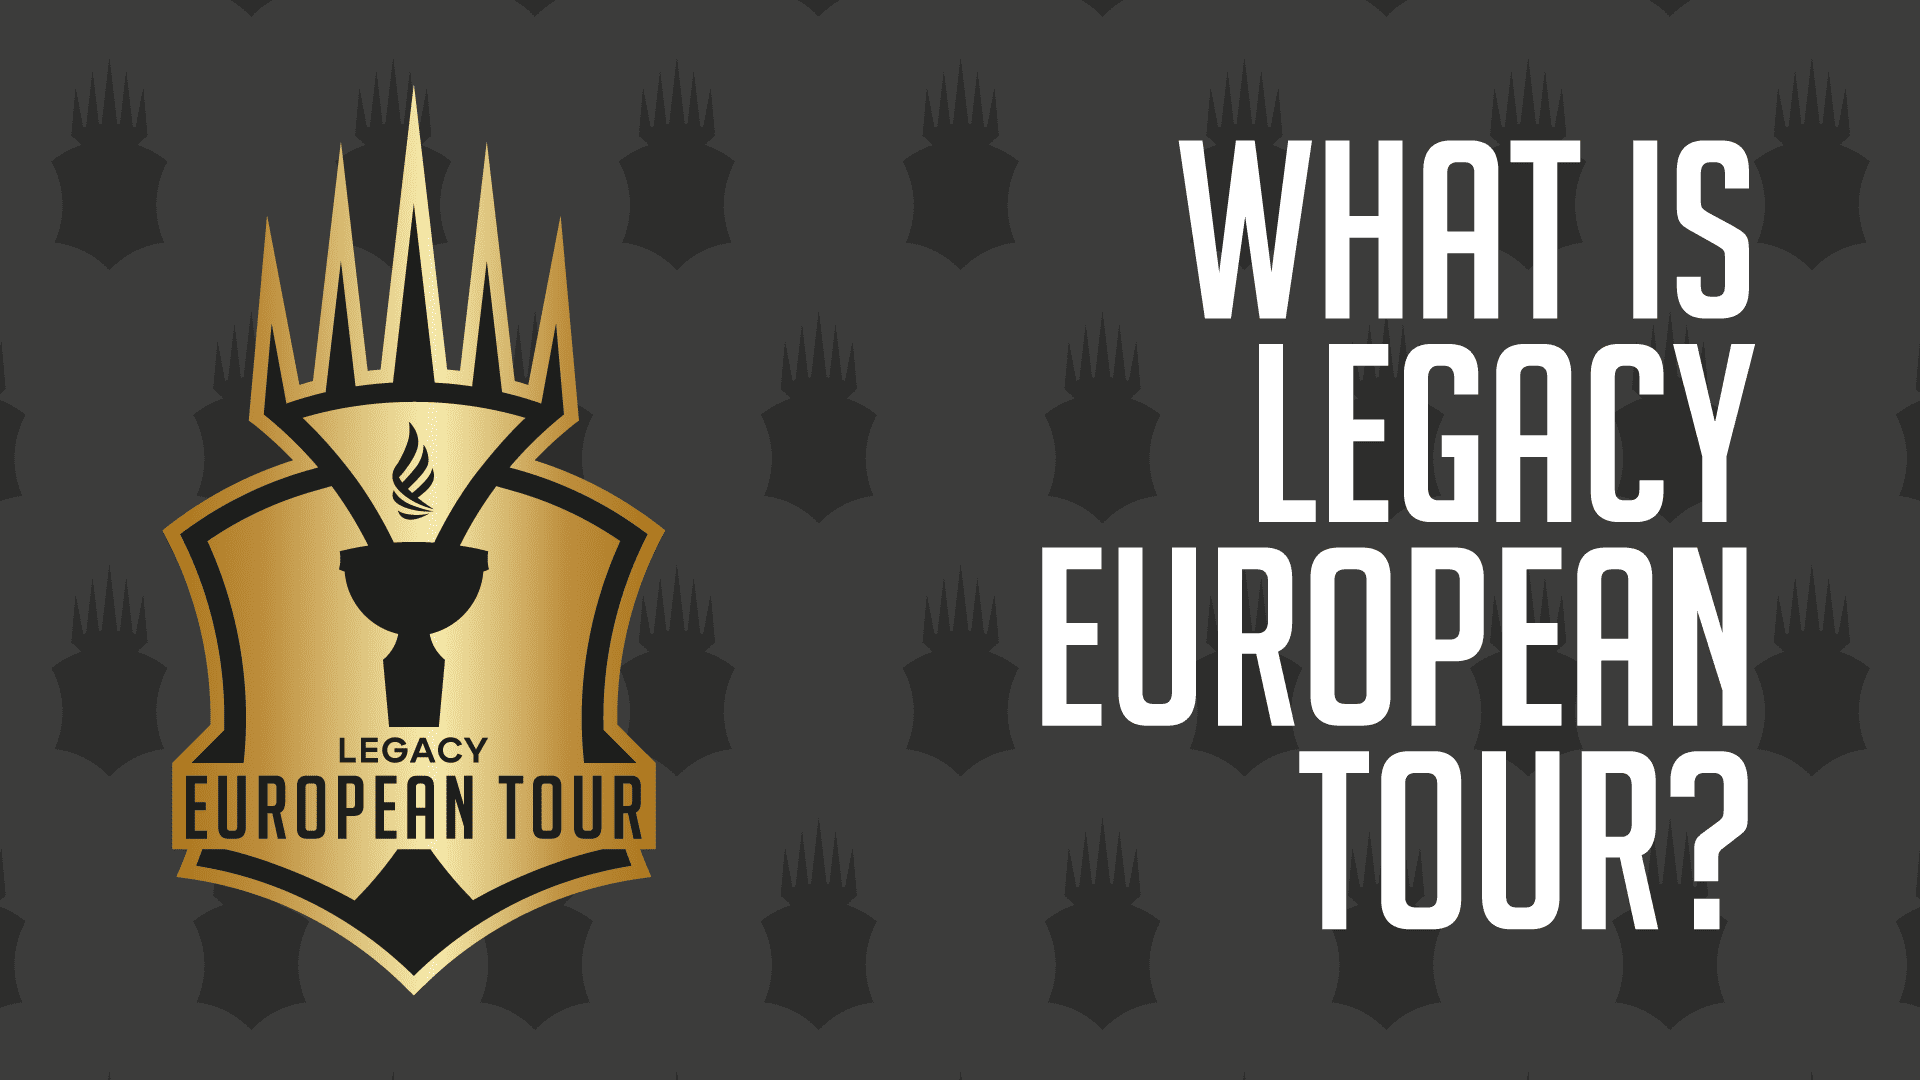 legacy european tour warsaw